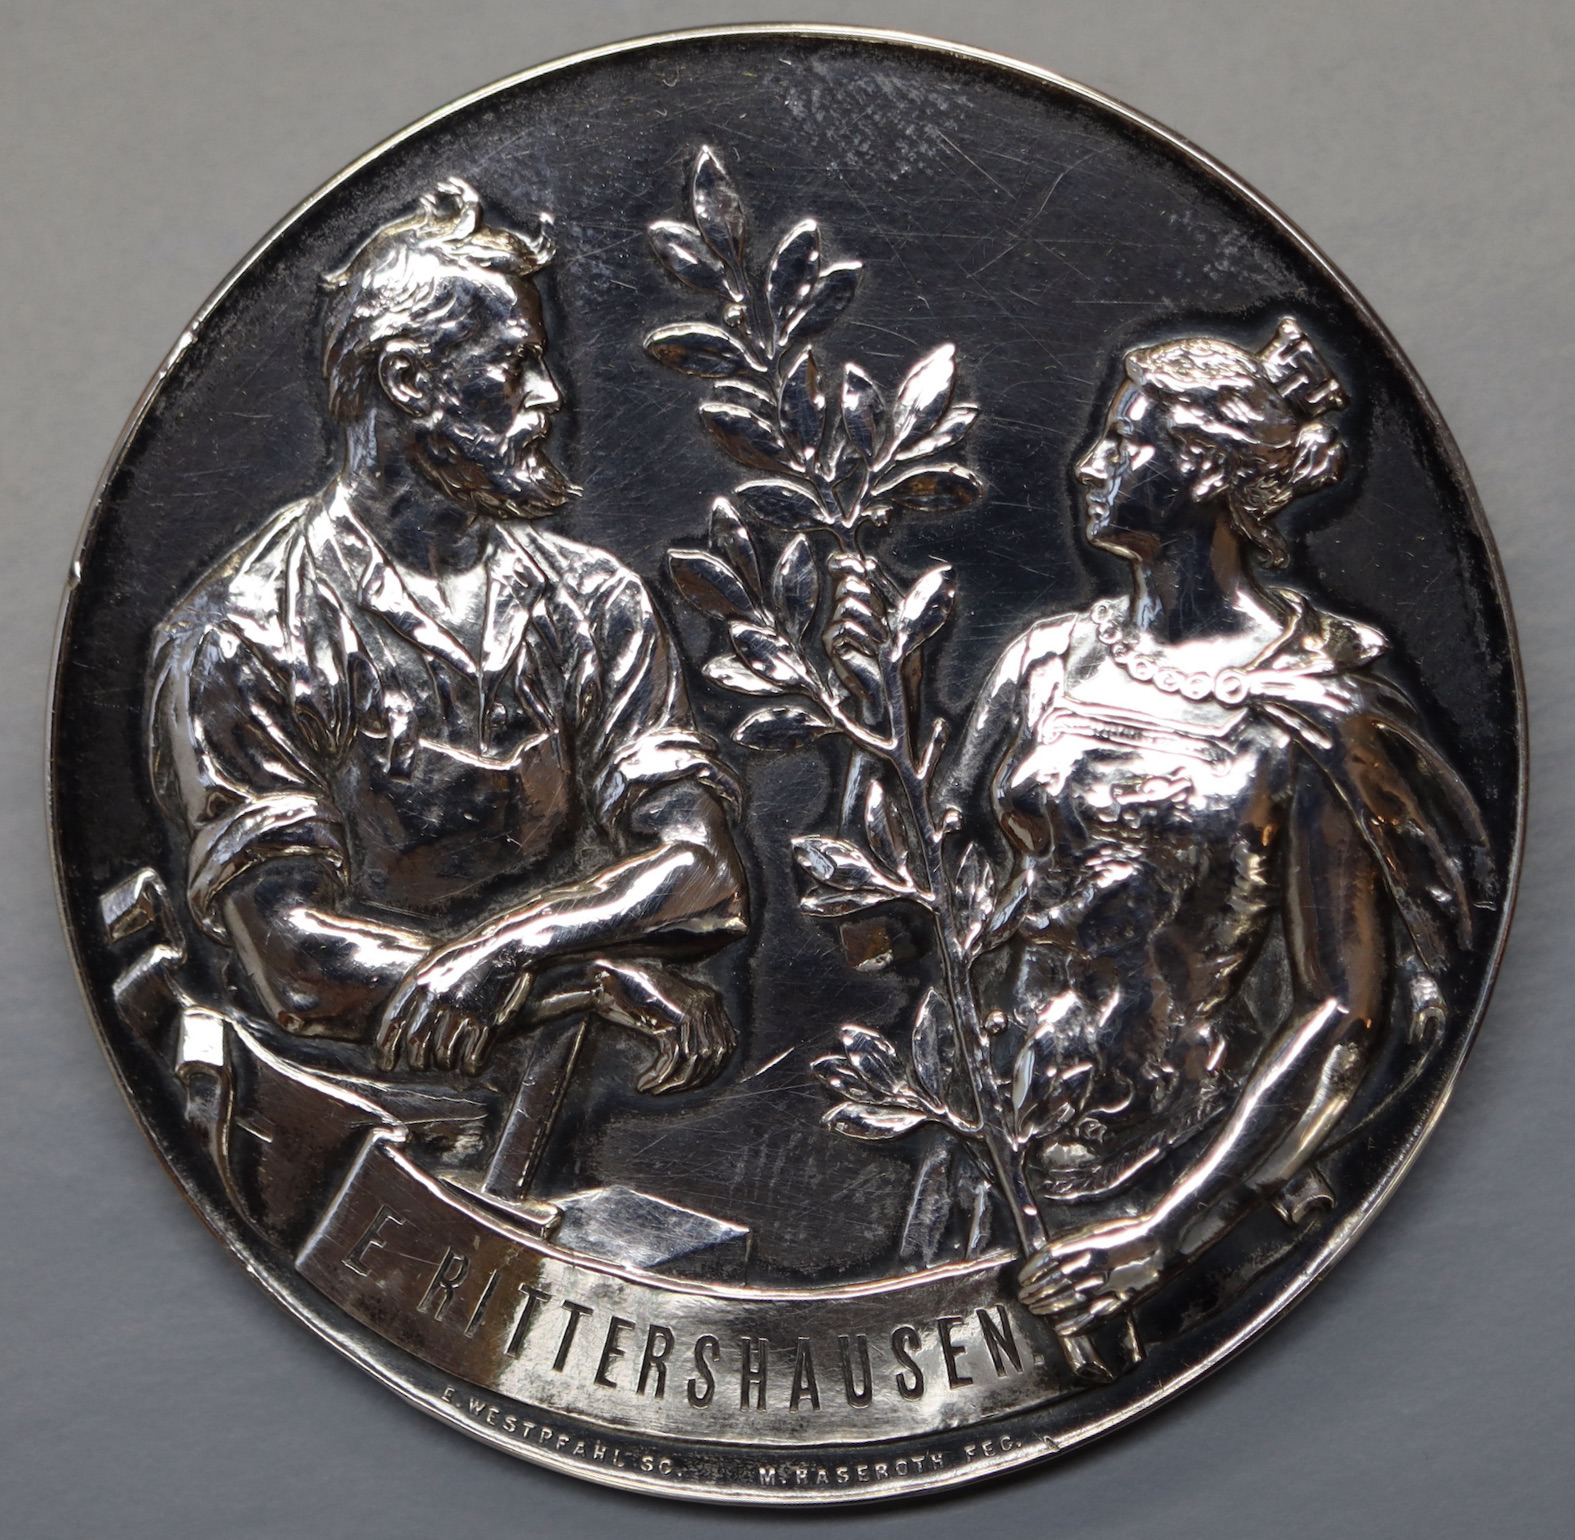 Rittershausen Medaille Gewerbeausstellung